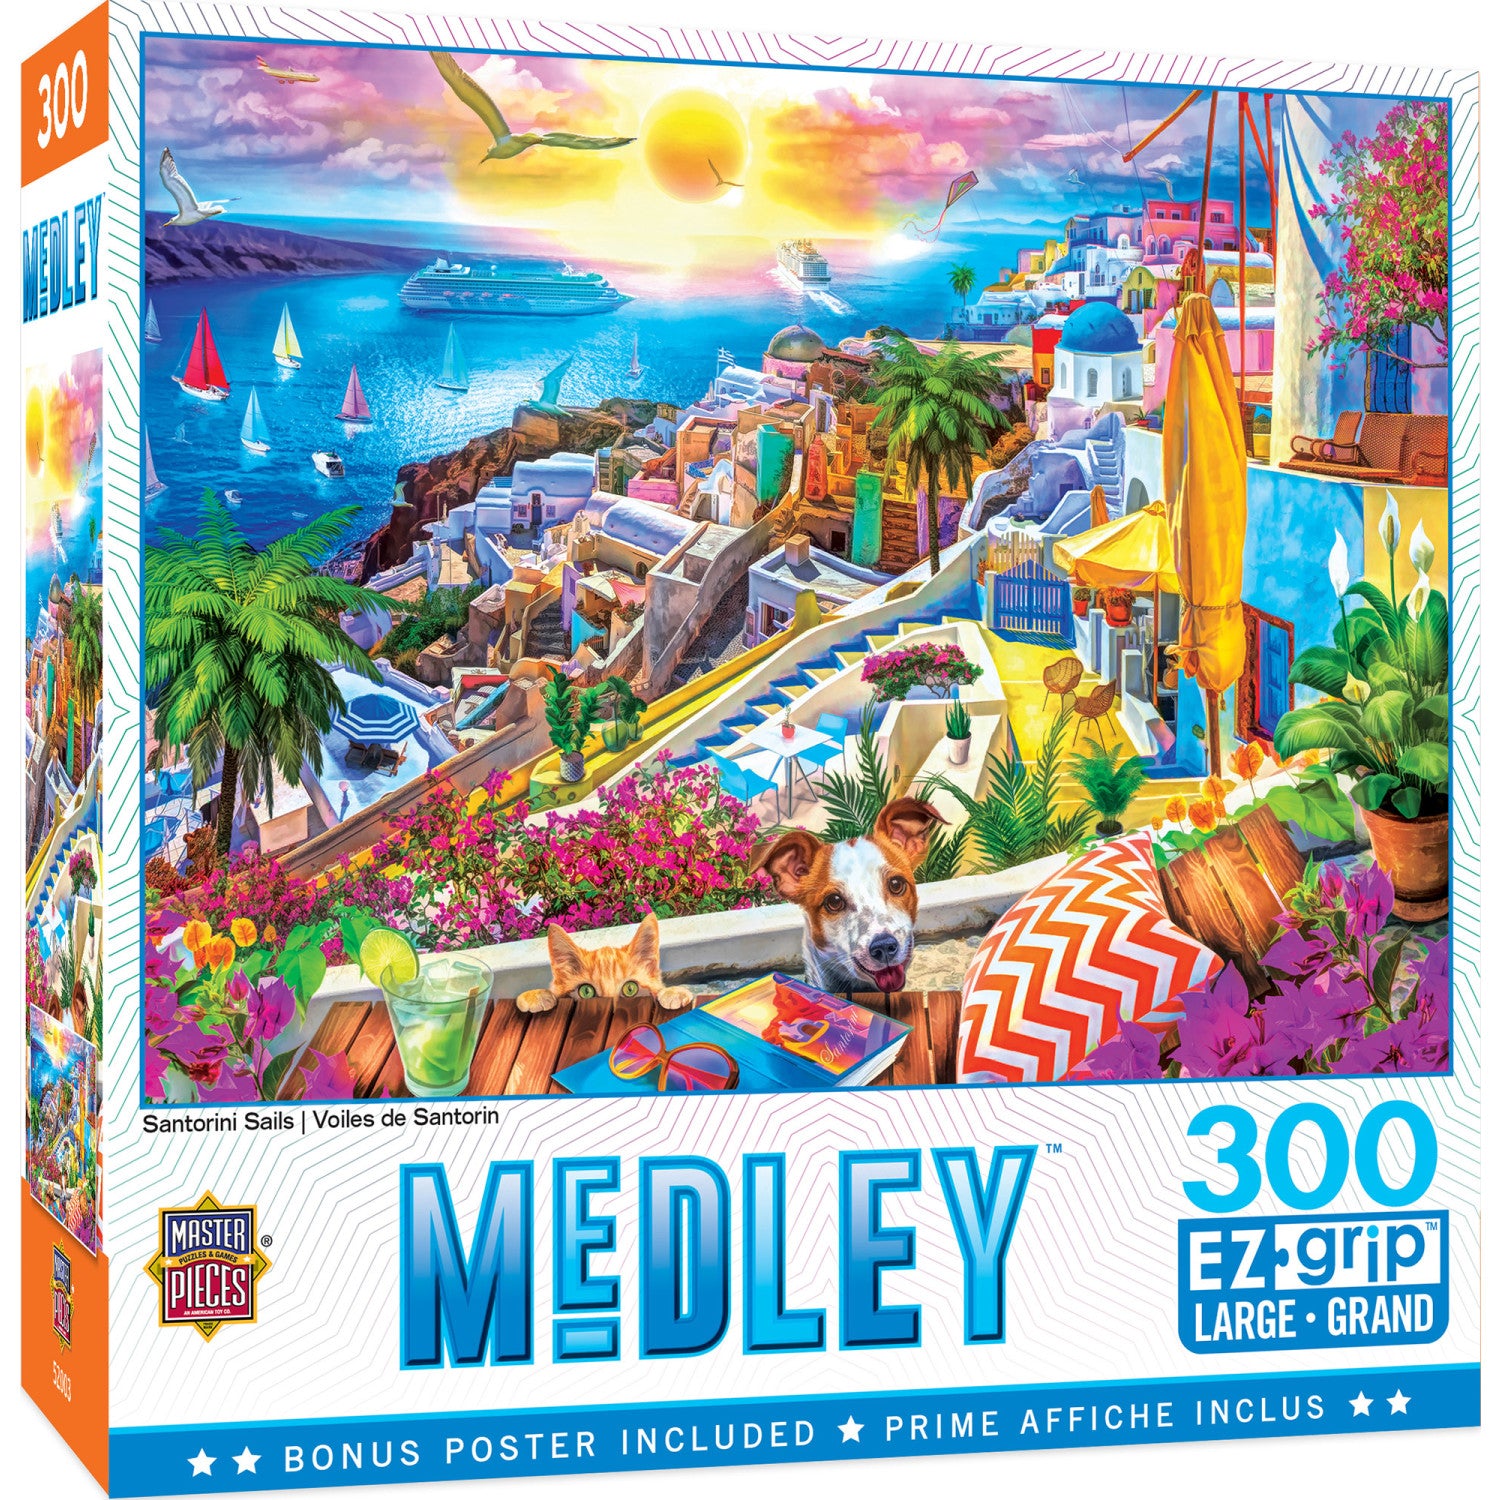 Medley - Santorini Sails 300 Piece EZ Grip Jigsaw Puzzle